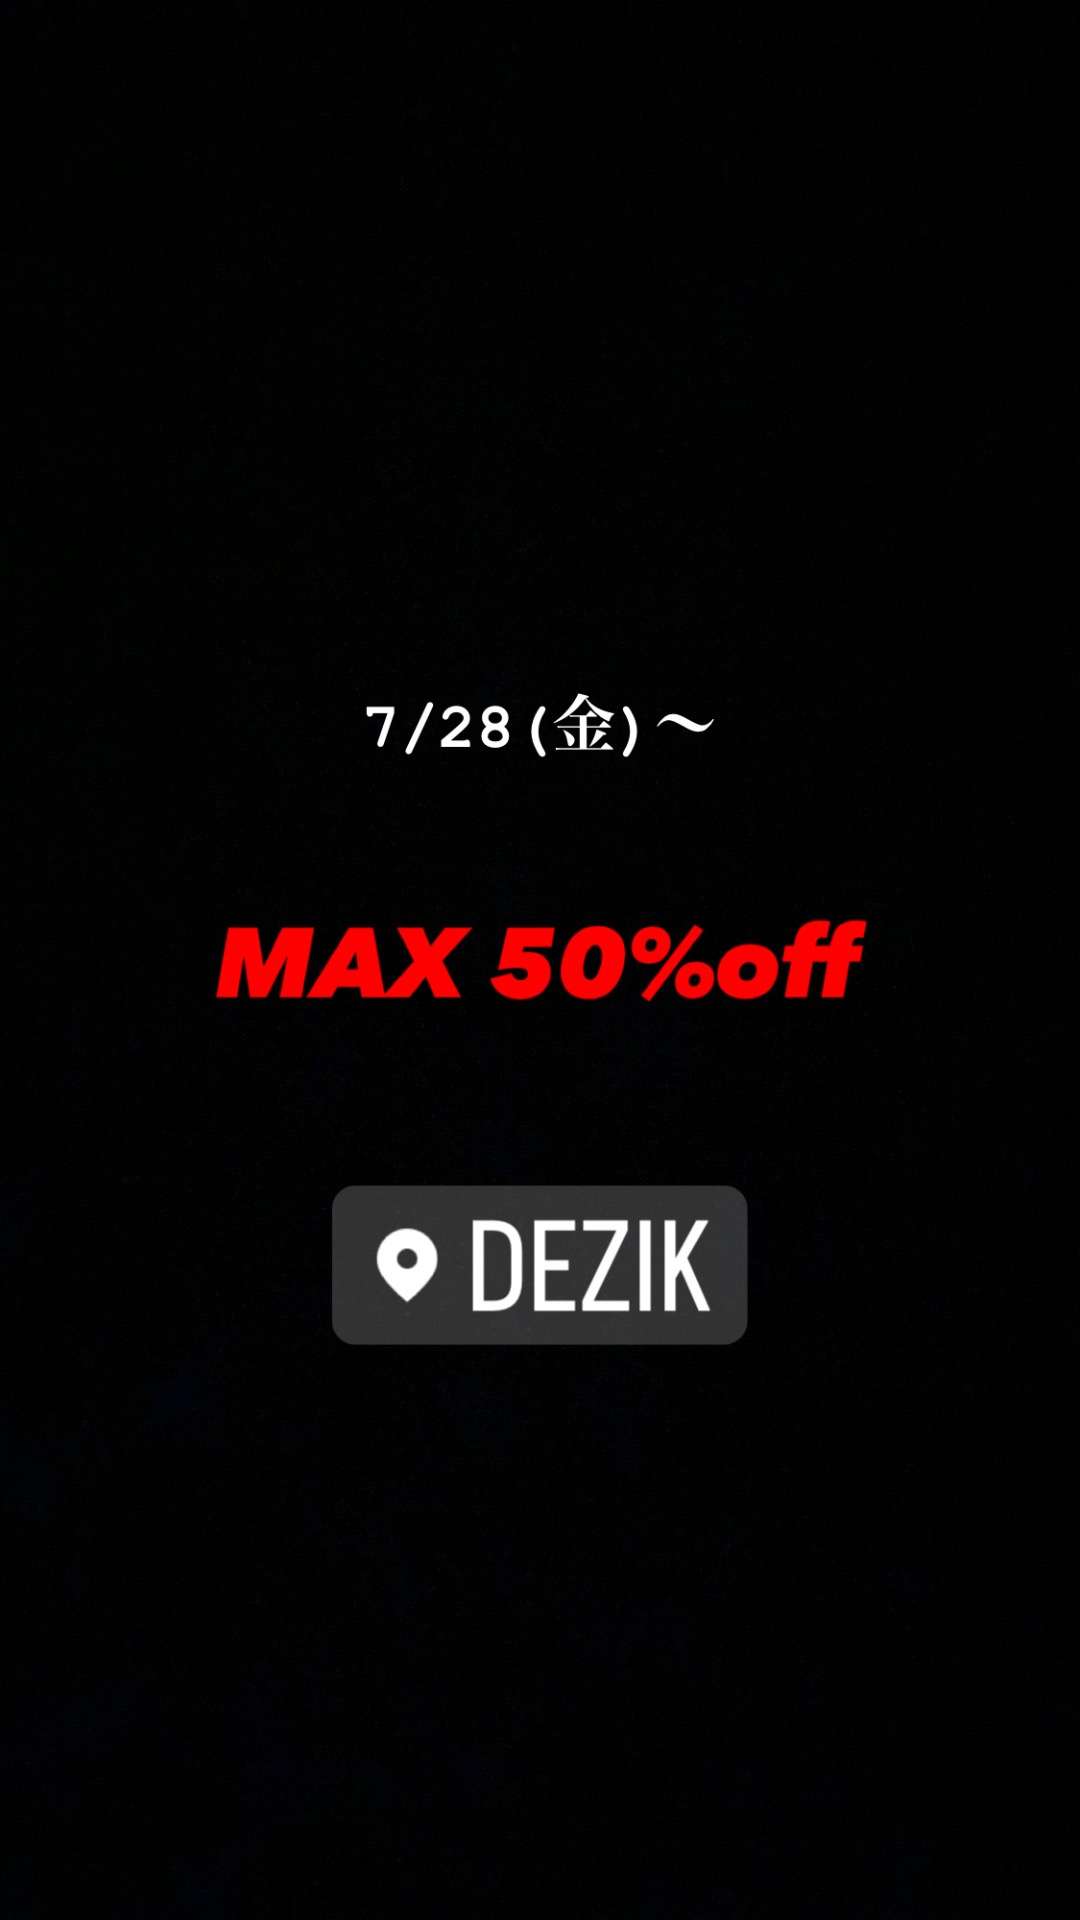 MAX 50%off